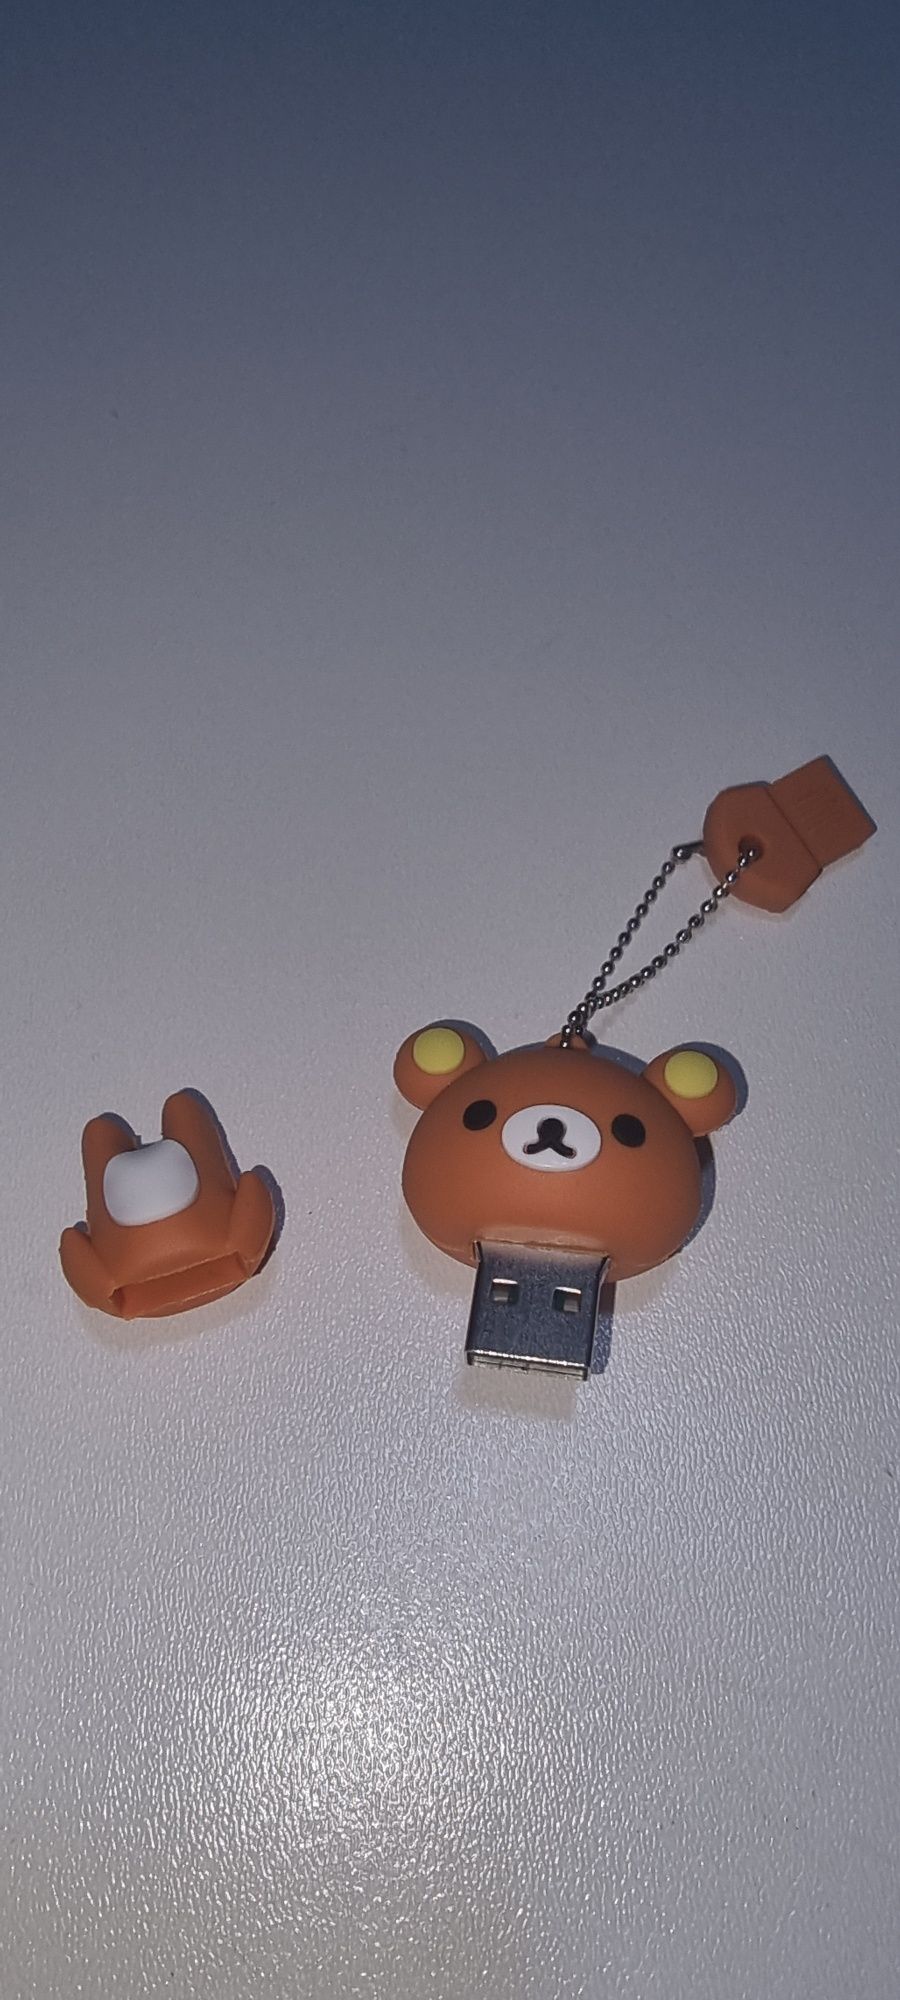 USB флешка  4 гиг в формі ведмедика

В наличии 1 шт

Состояние новая